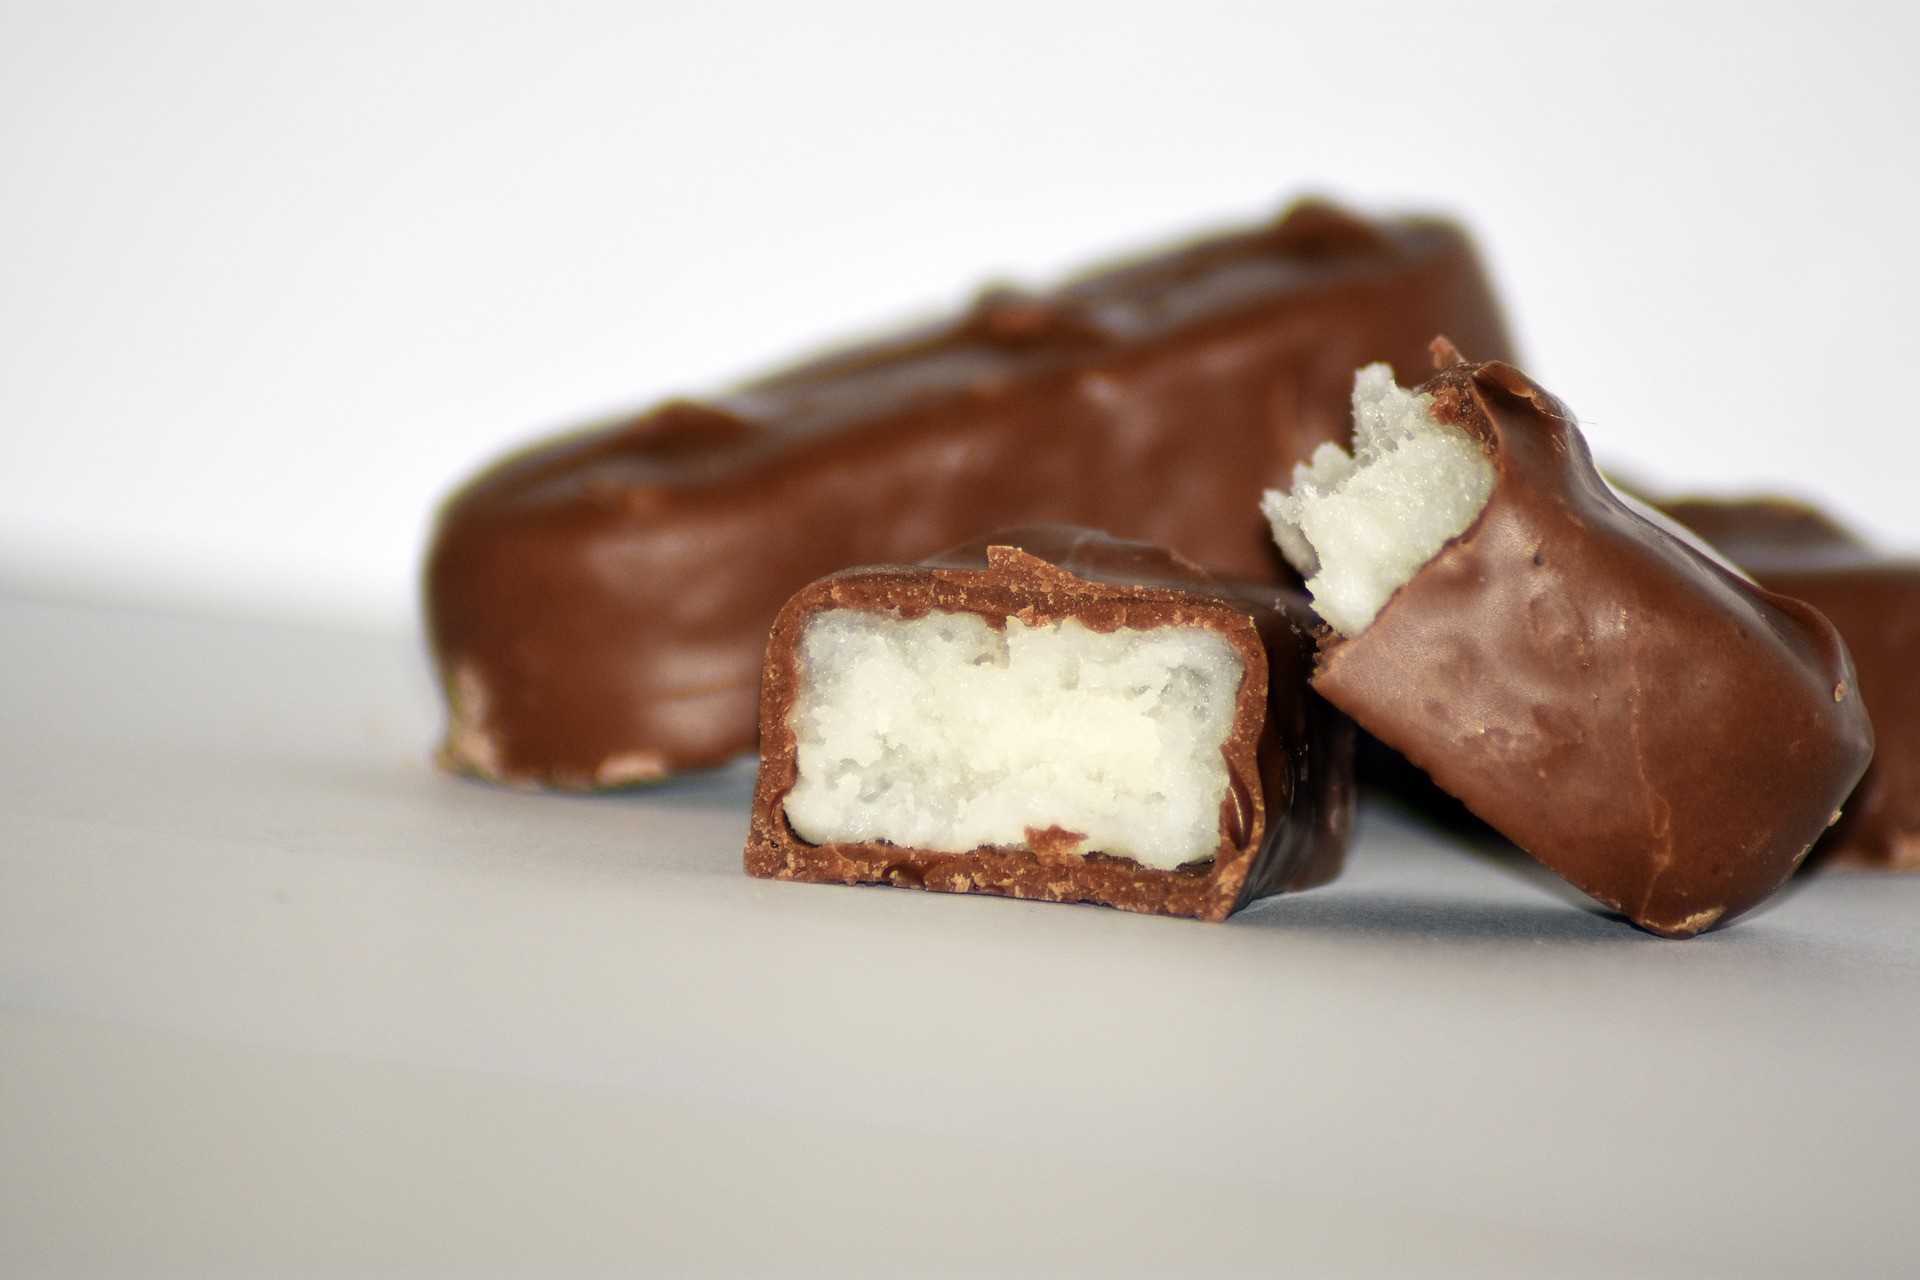 Bild: Schokoladenkurs - 3 vollwertige Bounty, zwei davon halbiert liegen auf einem Tisch nebeneinander.